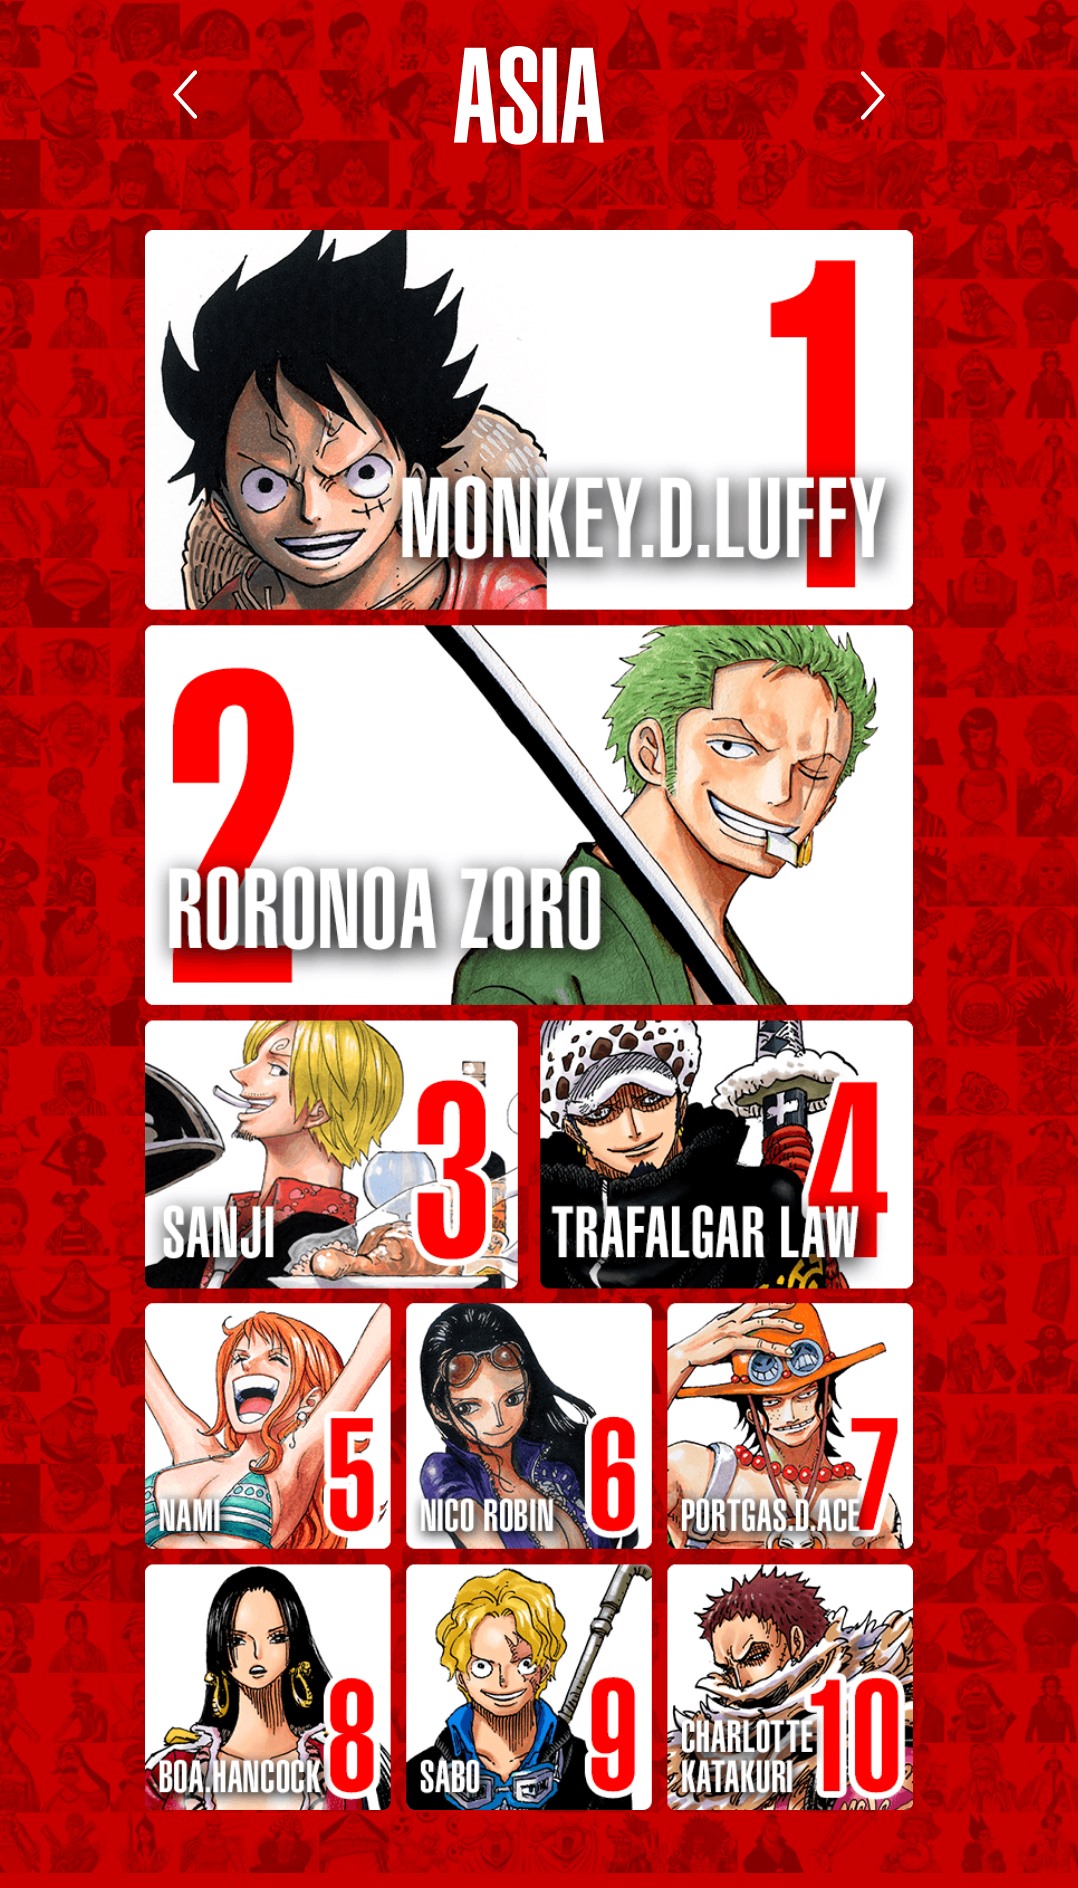 Hãy đến với thế giới One Piece và khám phá hành trình phiêu lưu của nhân vật chính Luffy cùng đồng đội! Những cuộc đối đầu lớn, những trận chiến gay cấn sẽ không làm bạn thất vọng. Hãy xem ảnh liên quan đến nhân vật One Piece để hiểu hơn về hành trình đầy màu sắc này.